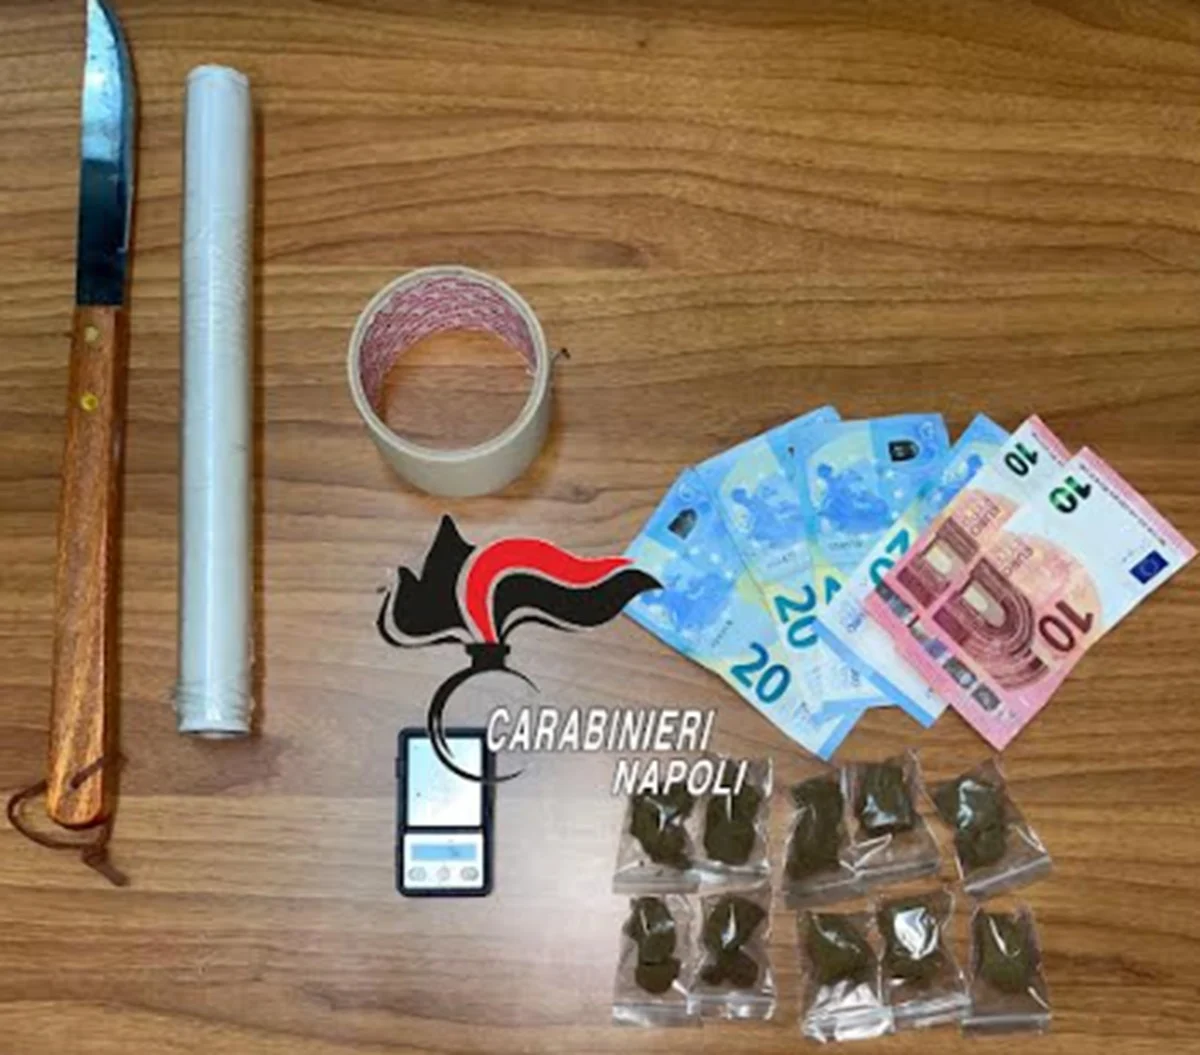 Portici arrestato droga carabinieri 23 aprile